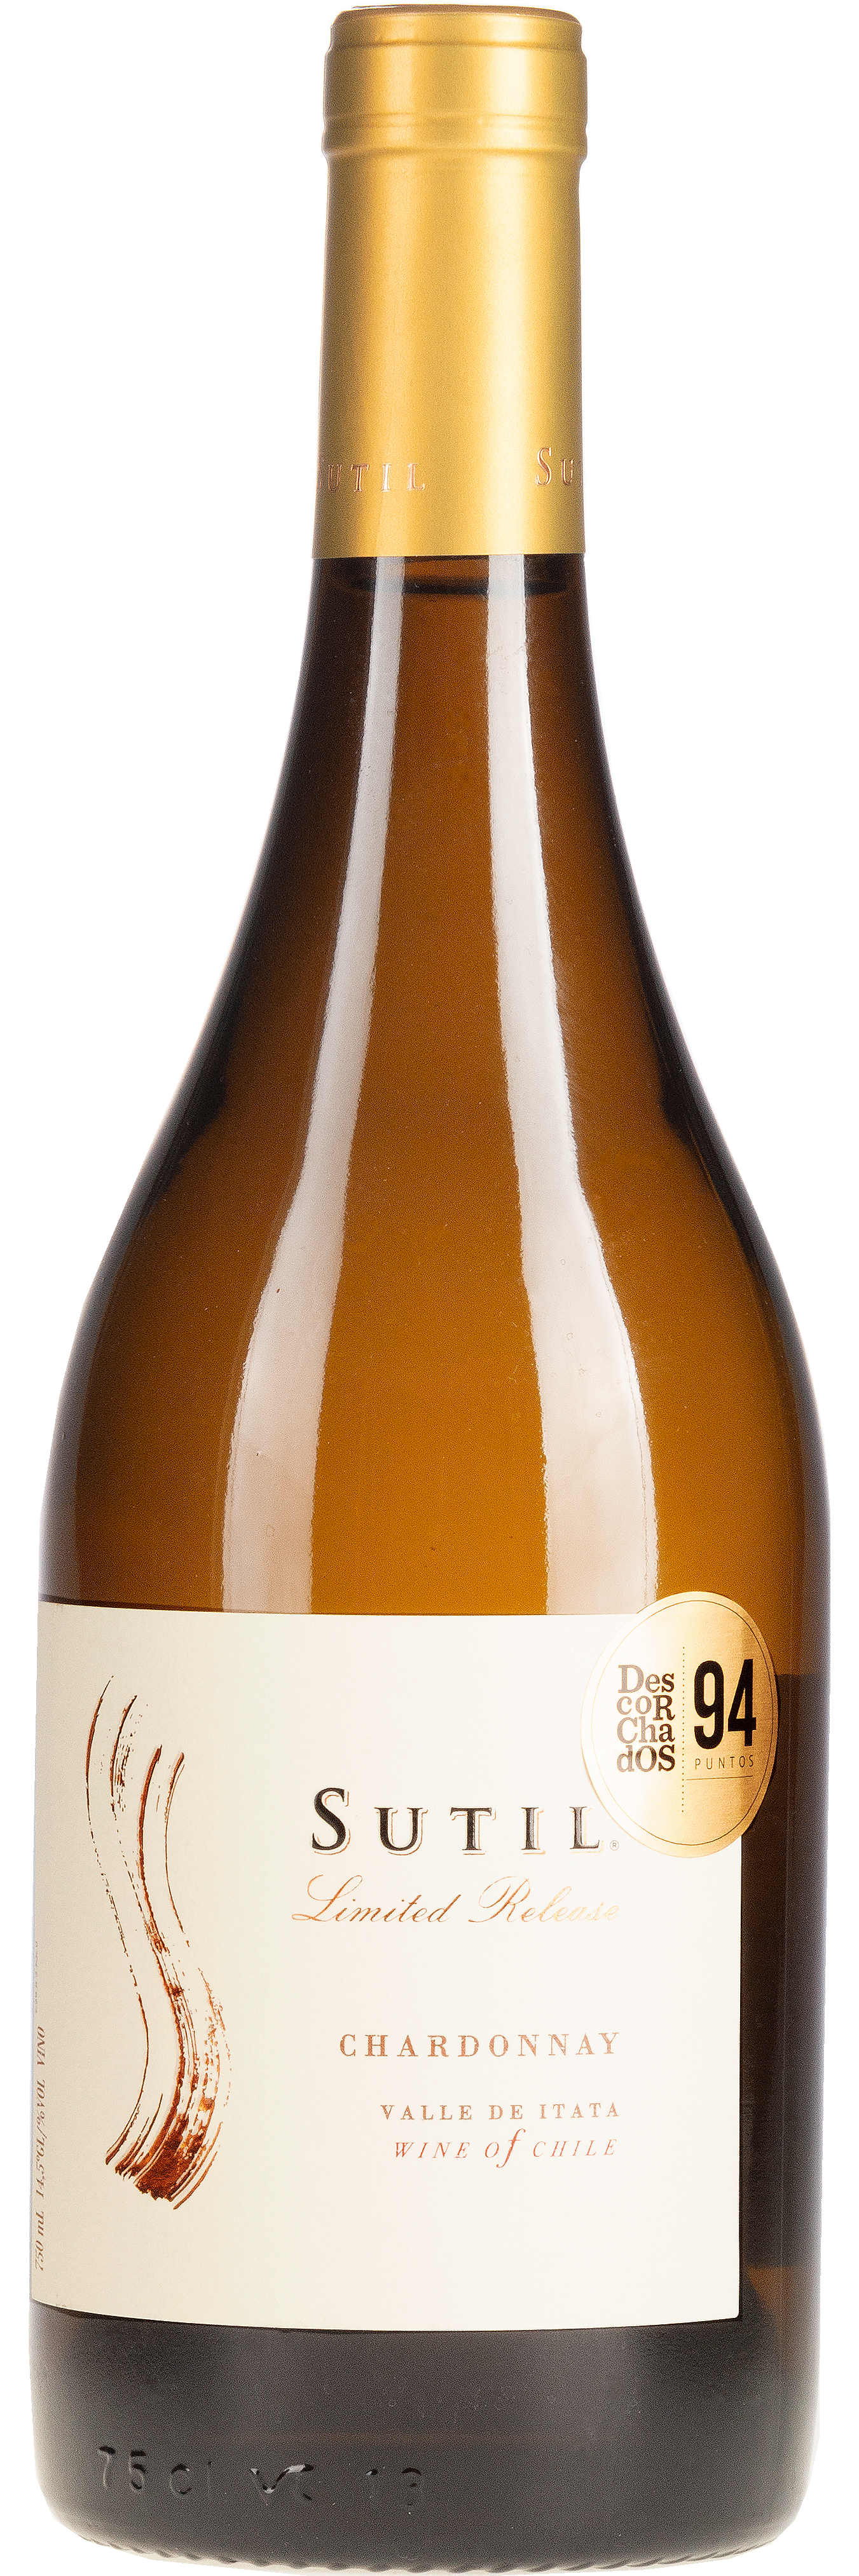 Sutil Chardonnay Limited Release - Chile - Weißwein trocken - 0,75l - 14,5% vol.